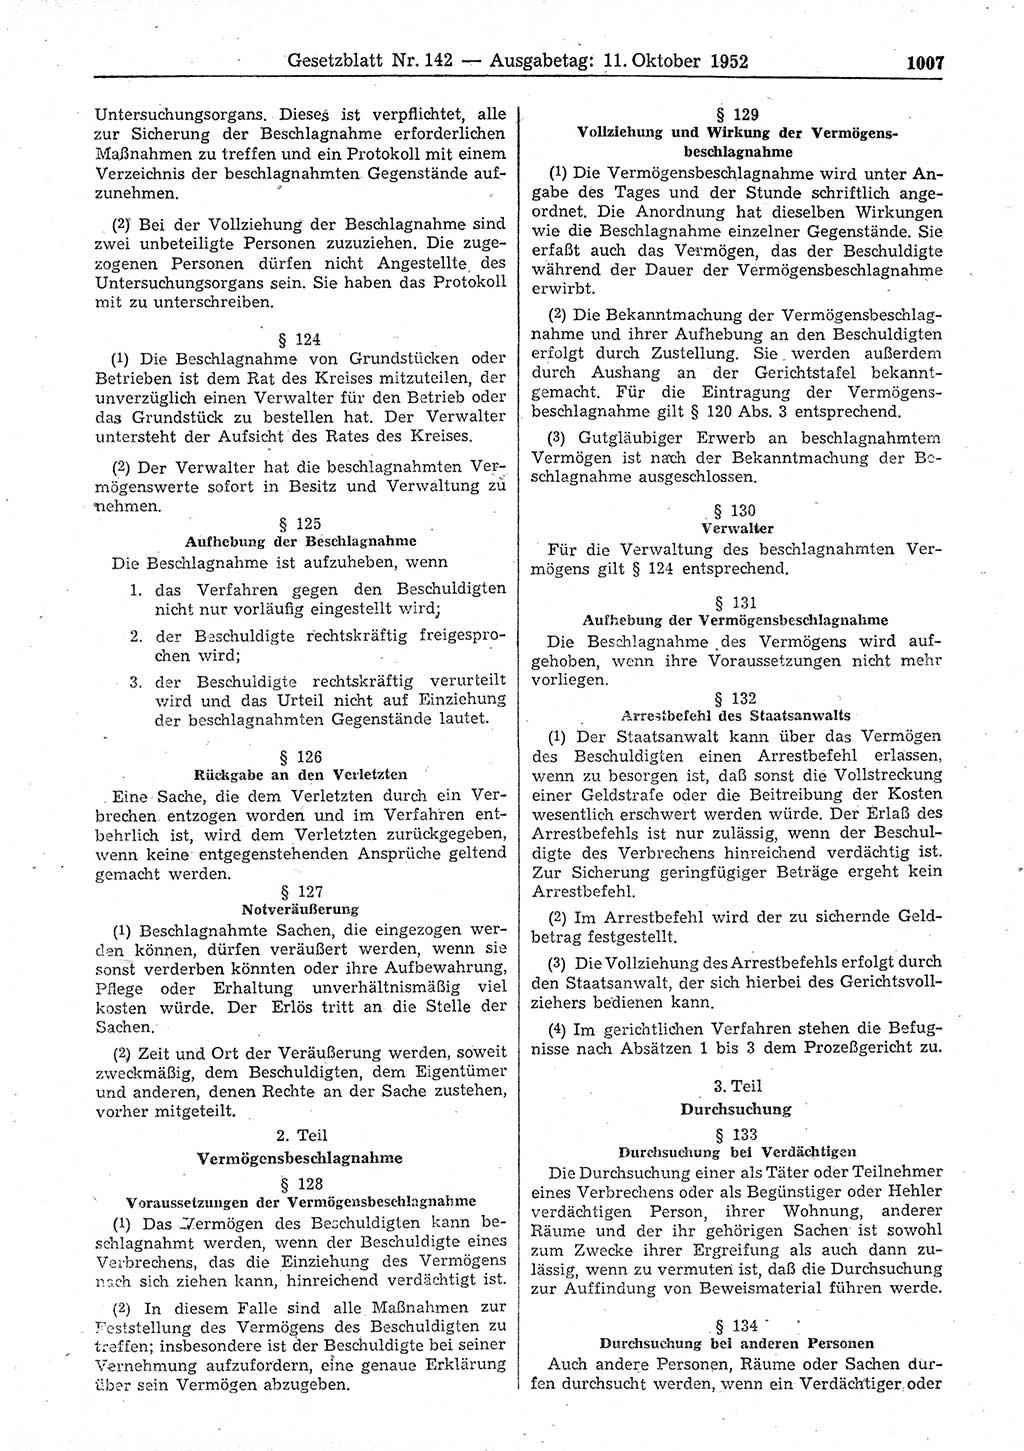 Gesetzblatt (GBl.) der Deutschen Demokratischen Republik (DDR) 1952, Seite 1007 (GBl. DDR 1952, S. 1007)